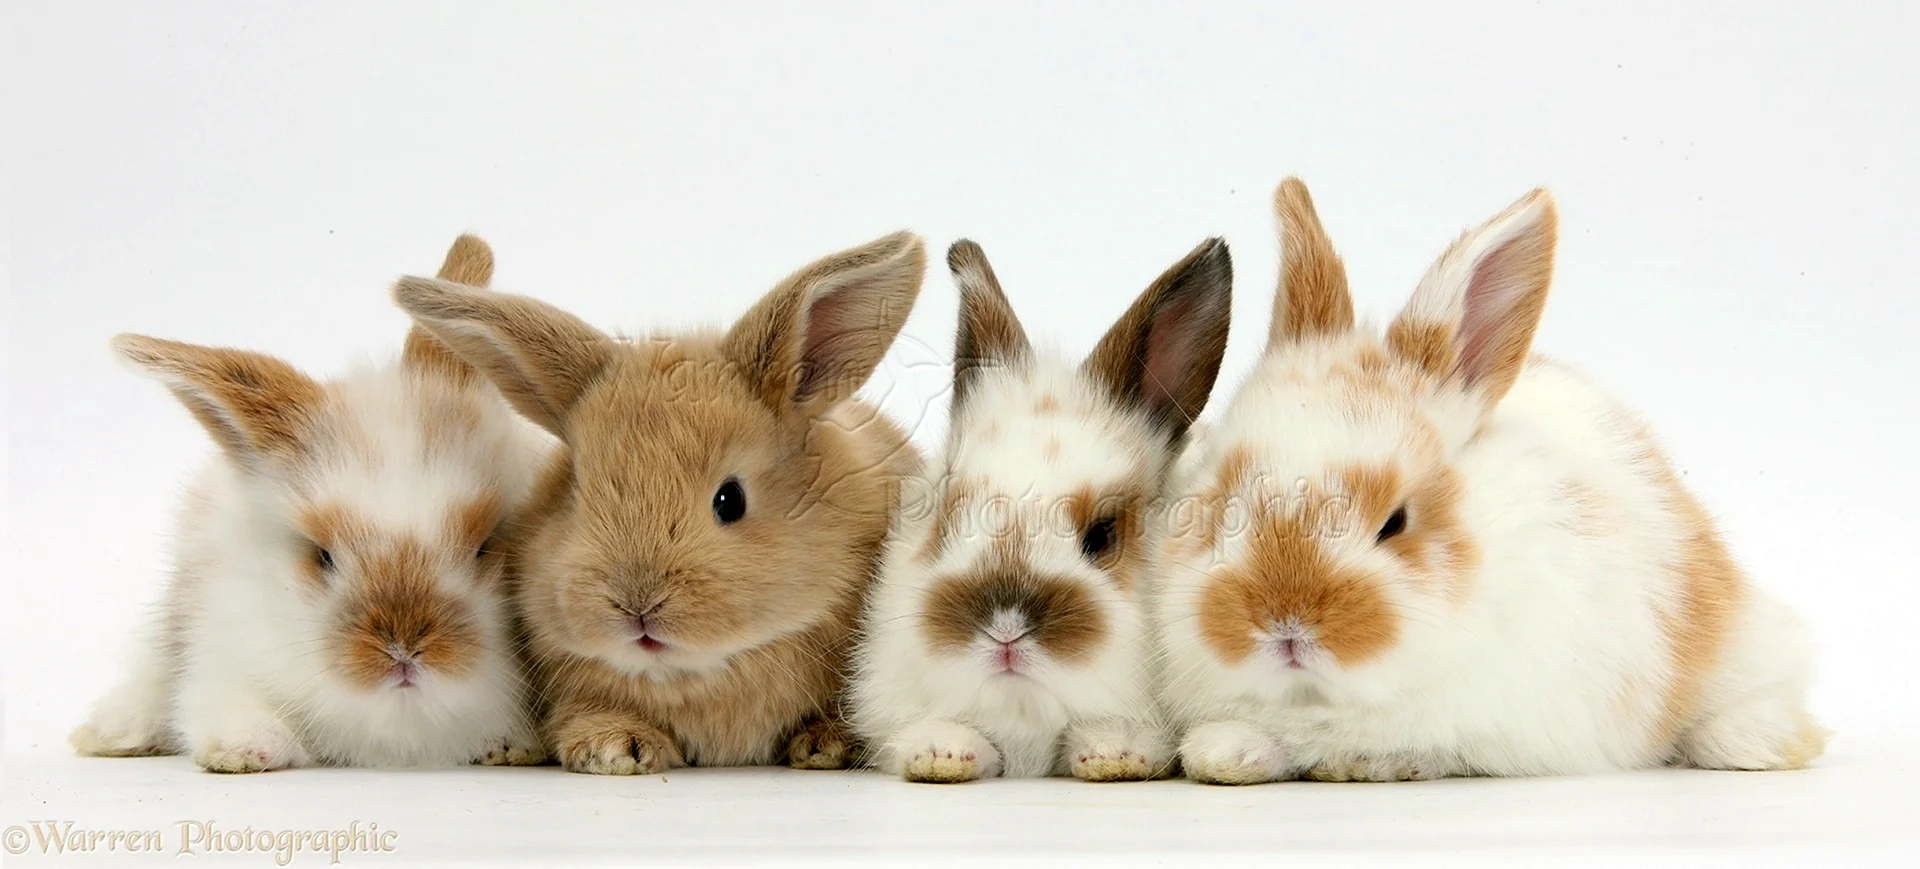 Несколько кроликов